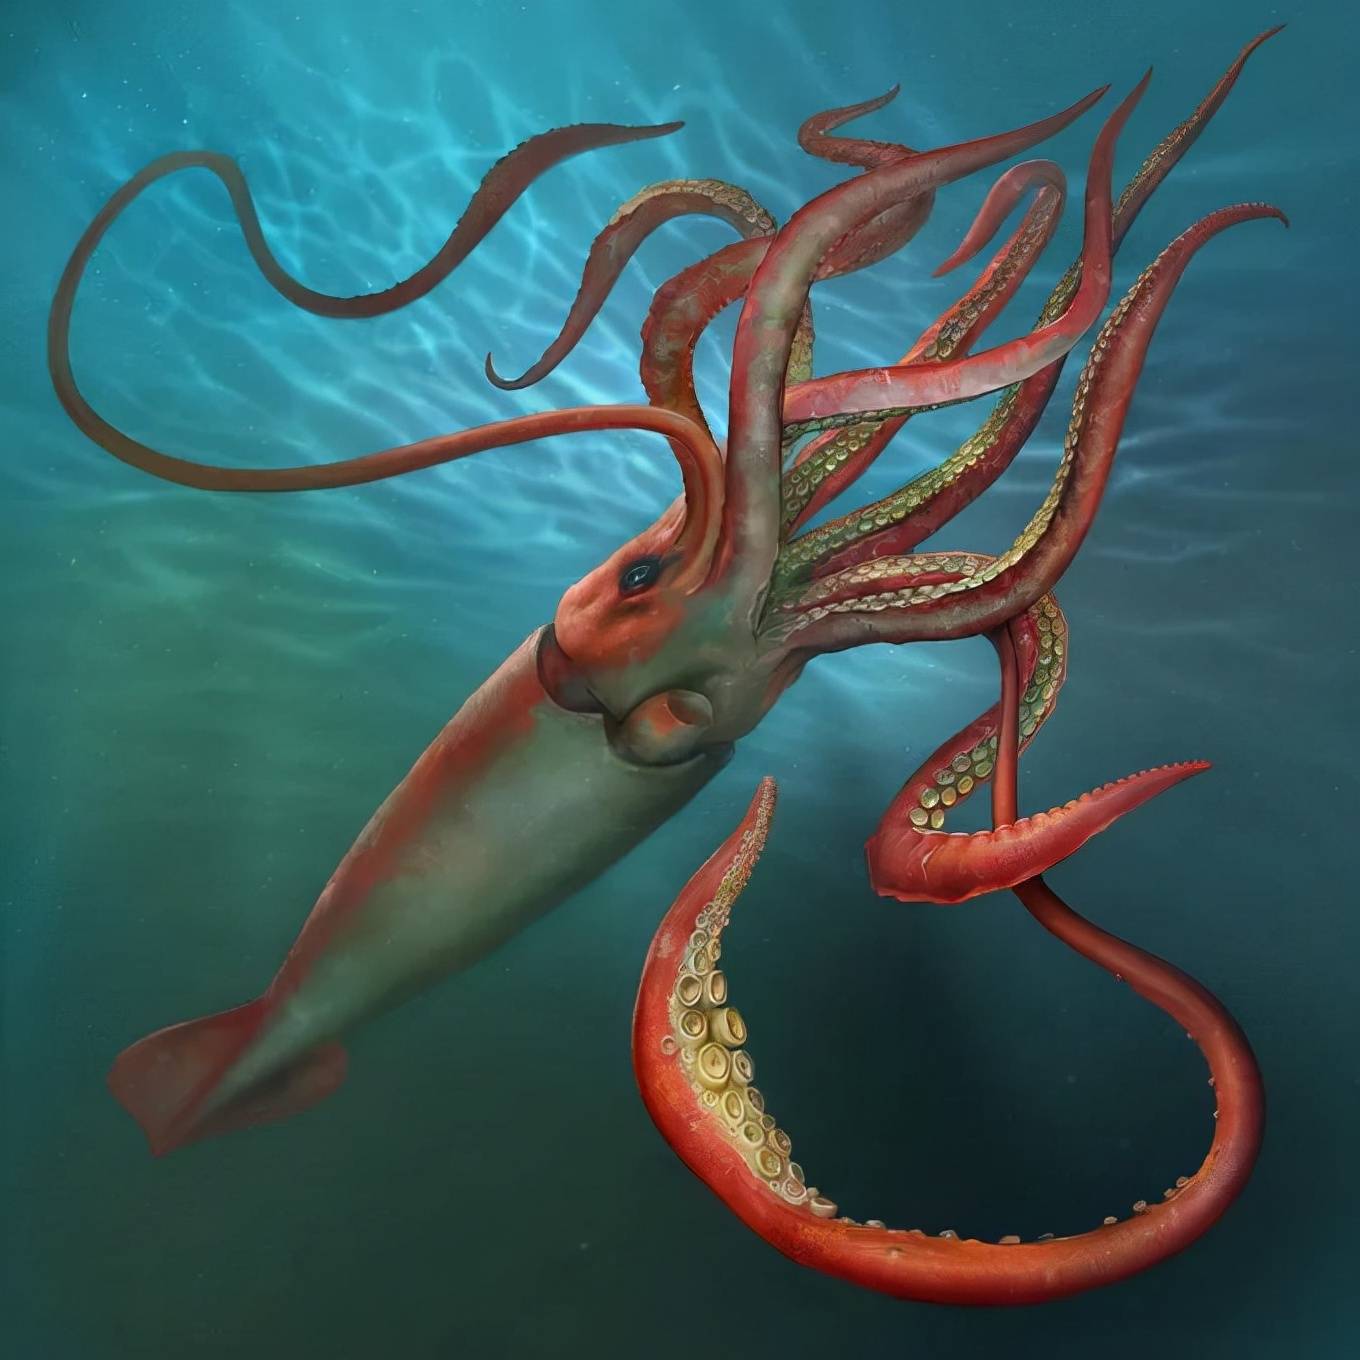 原创世界上最大的无脊椎动物是大王酸浆鱿